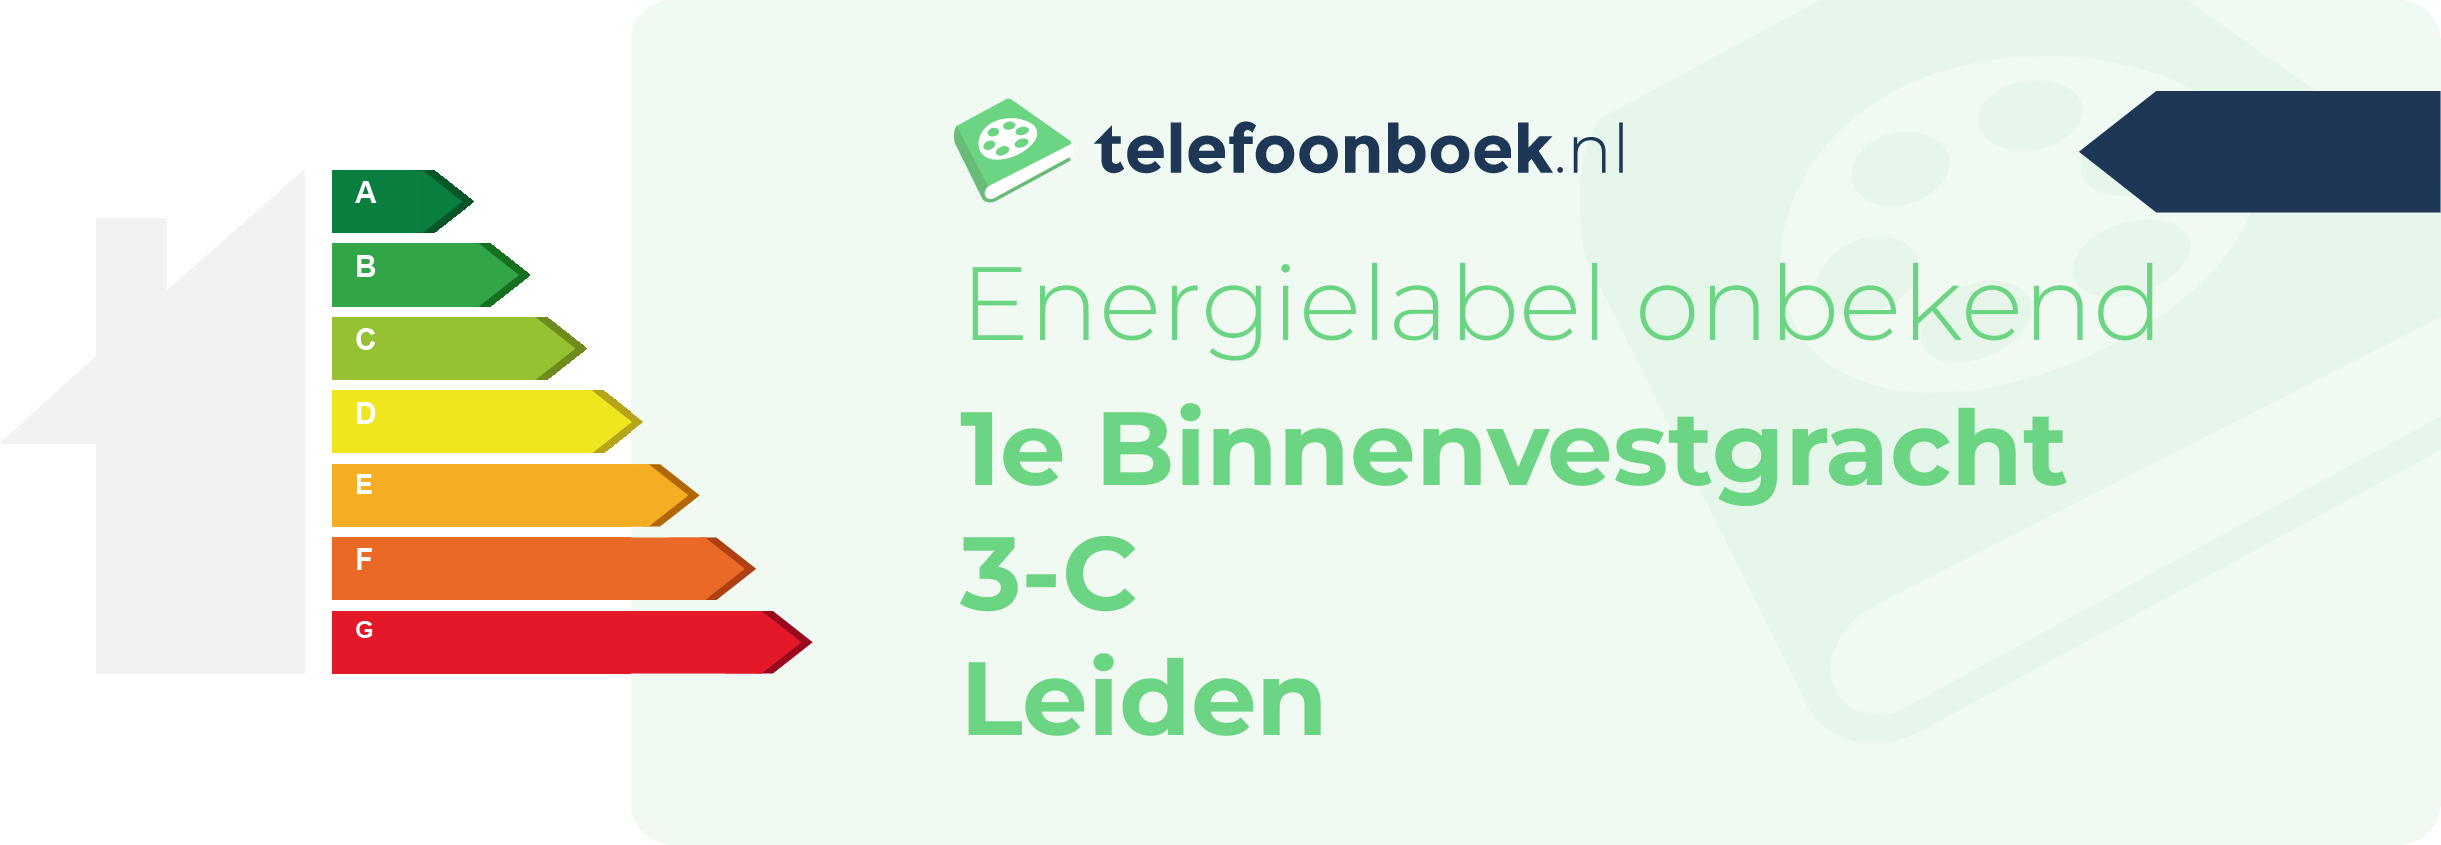 Energielabel 1e Binnenvestgracht 3-C Leiden